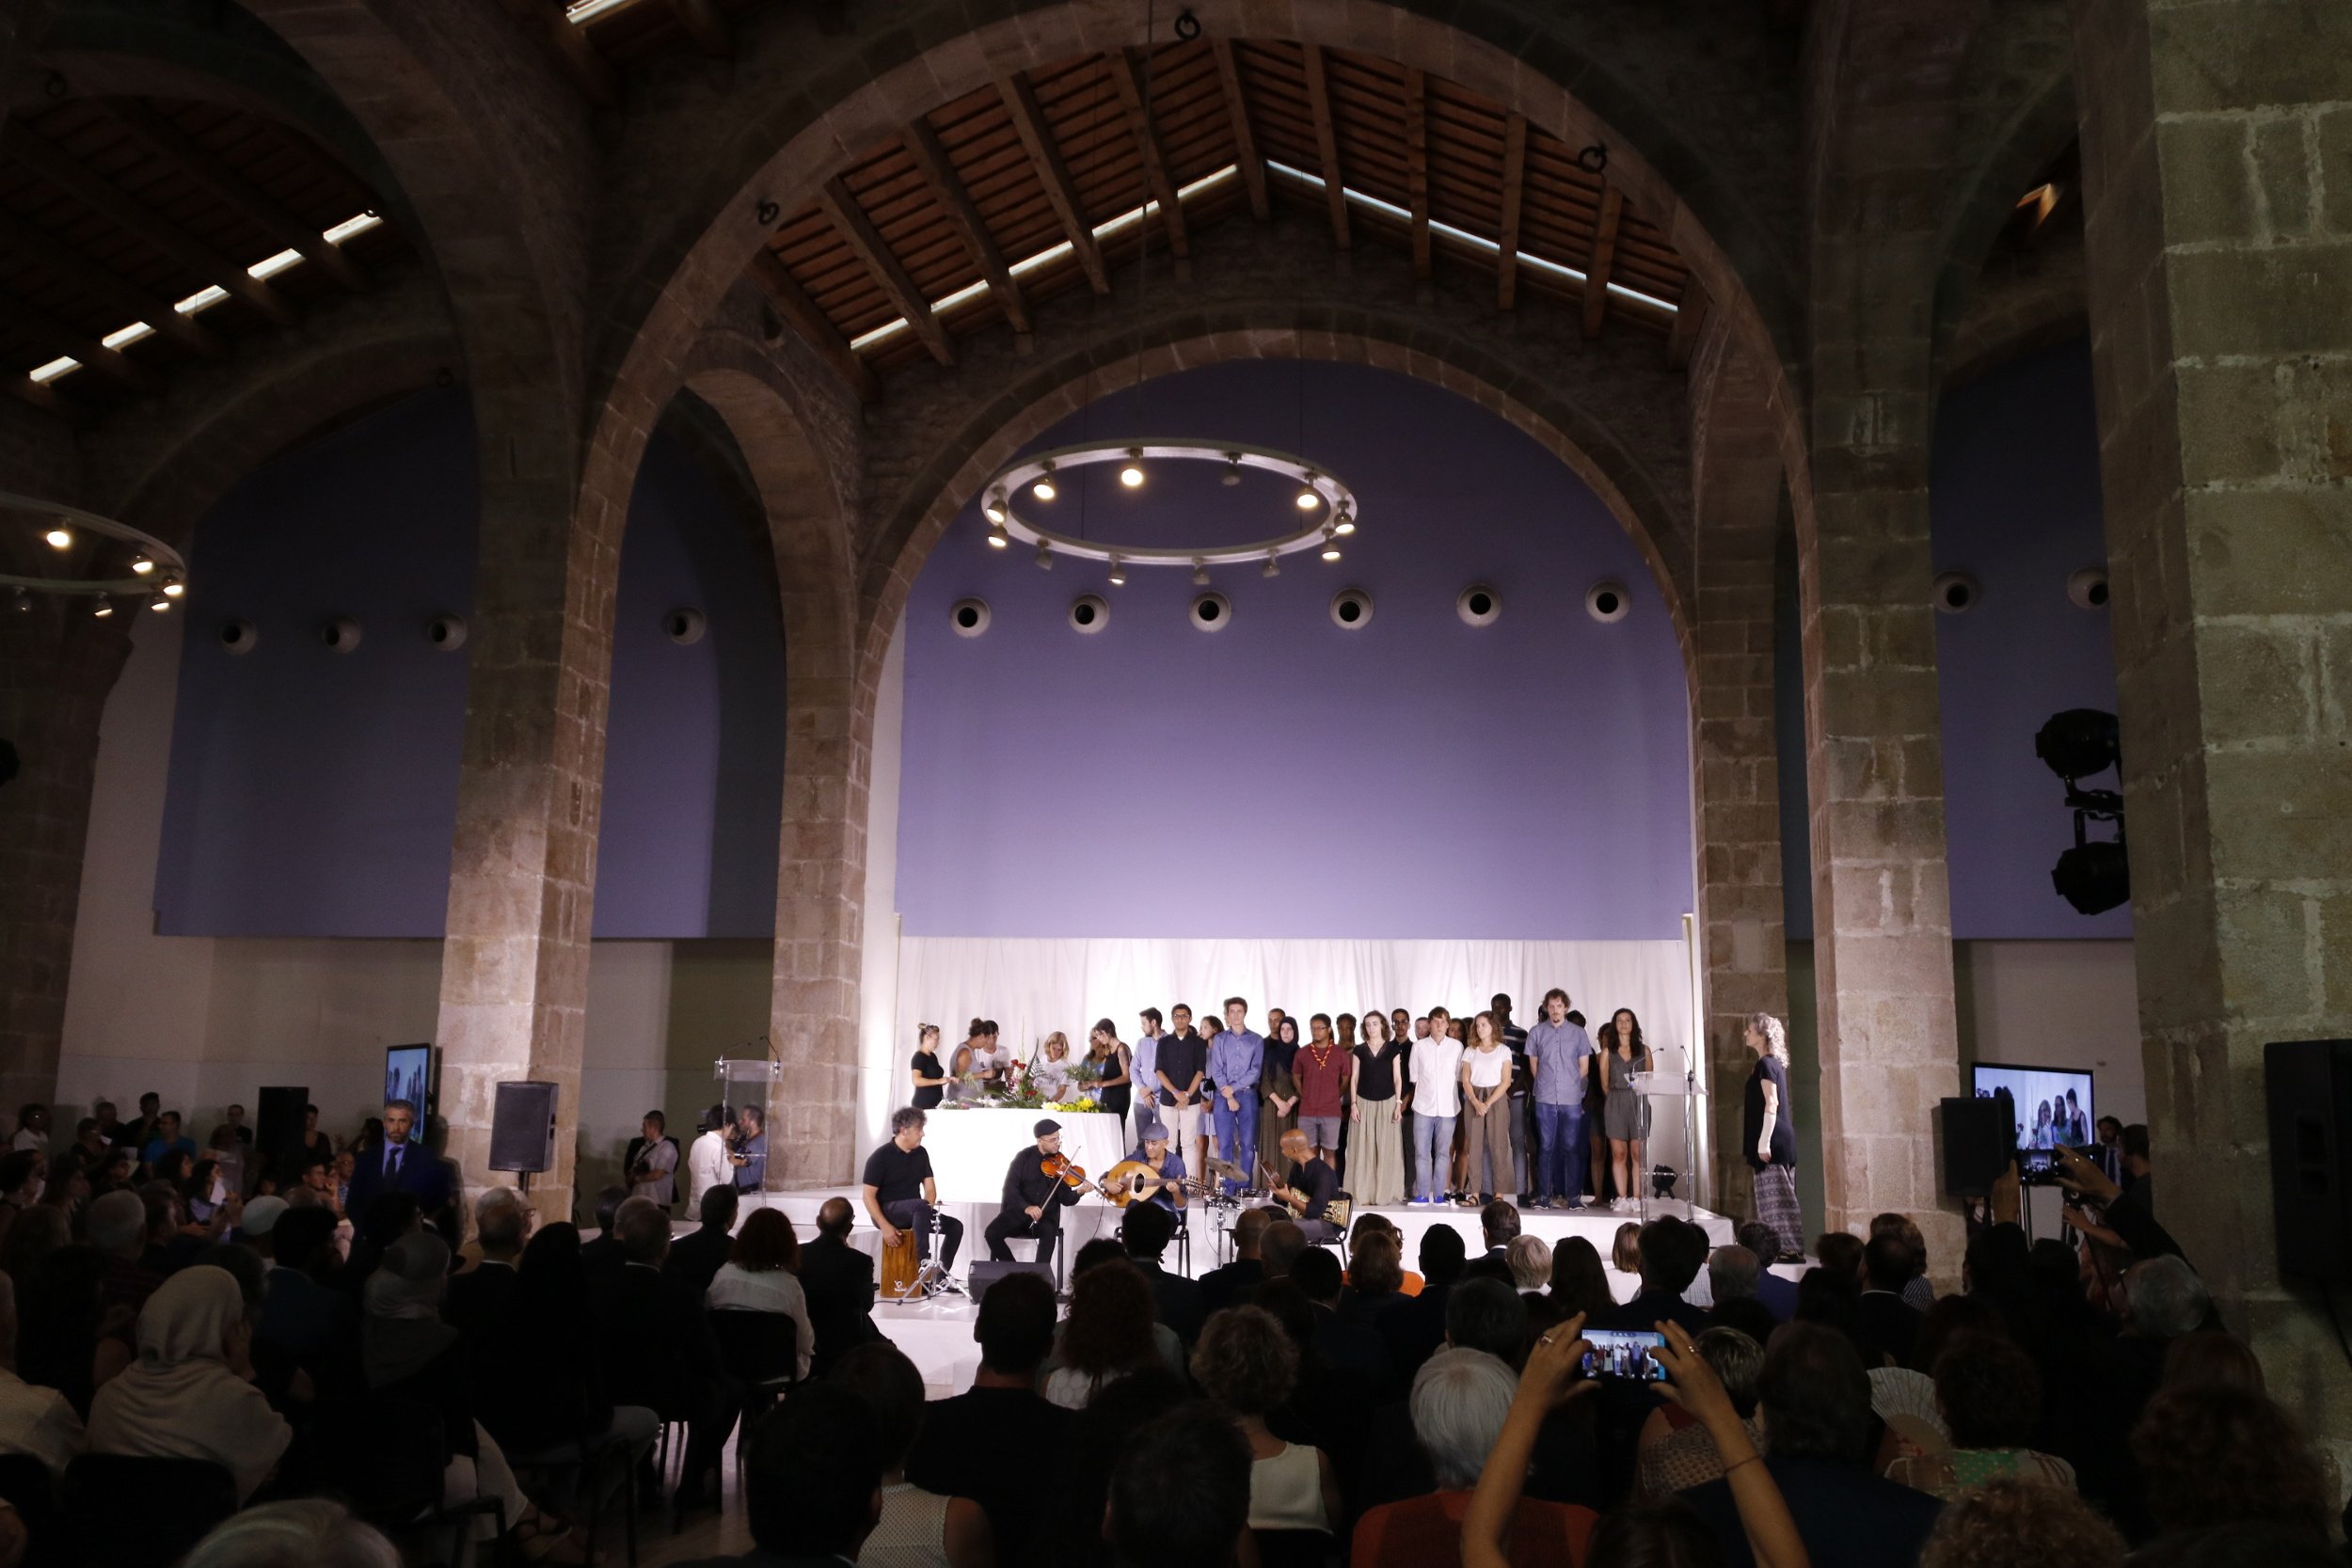 Barcelona celebra un acte interreligiós com a "mirall de la diversitat" de la ciutat